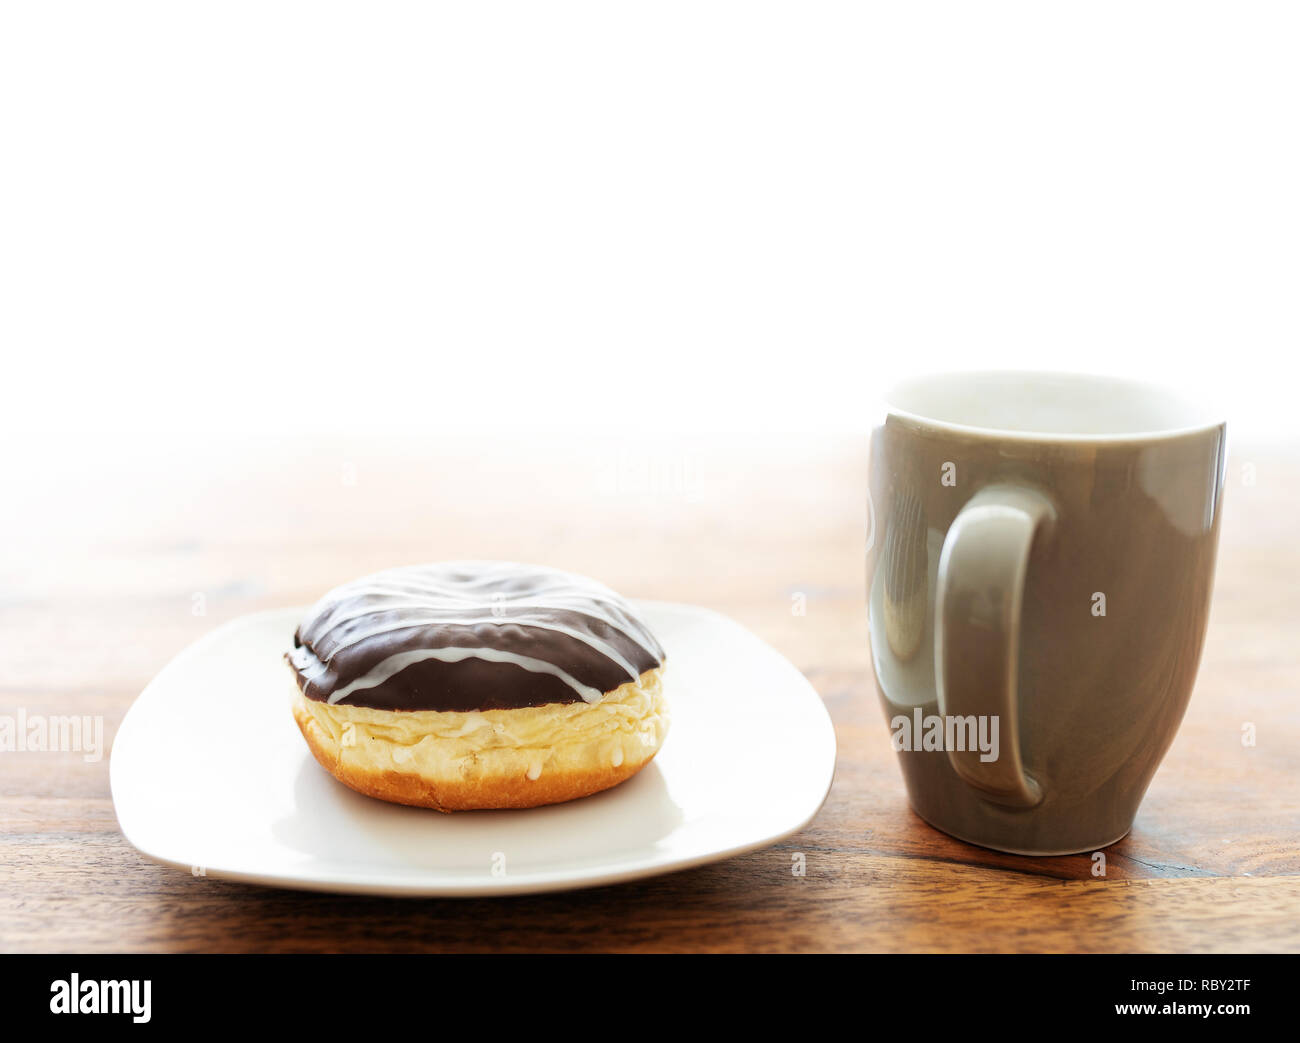 Jelly donut et tasse à café sur table en bois Banque D'Images